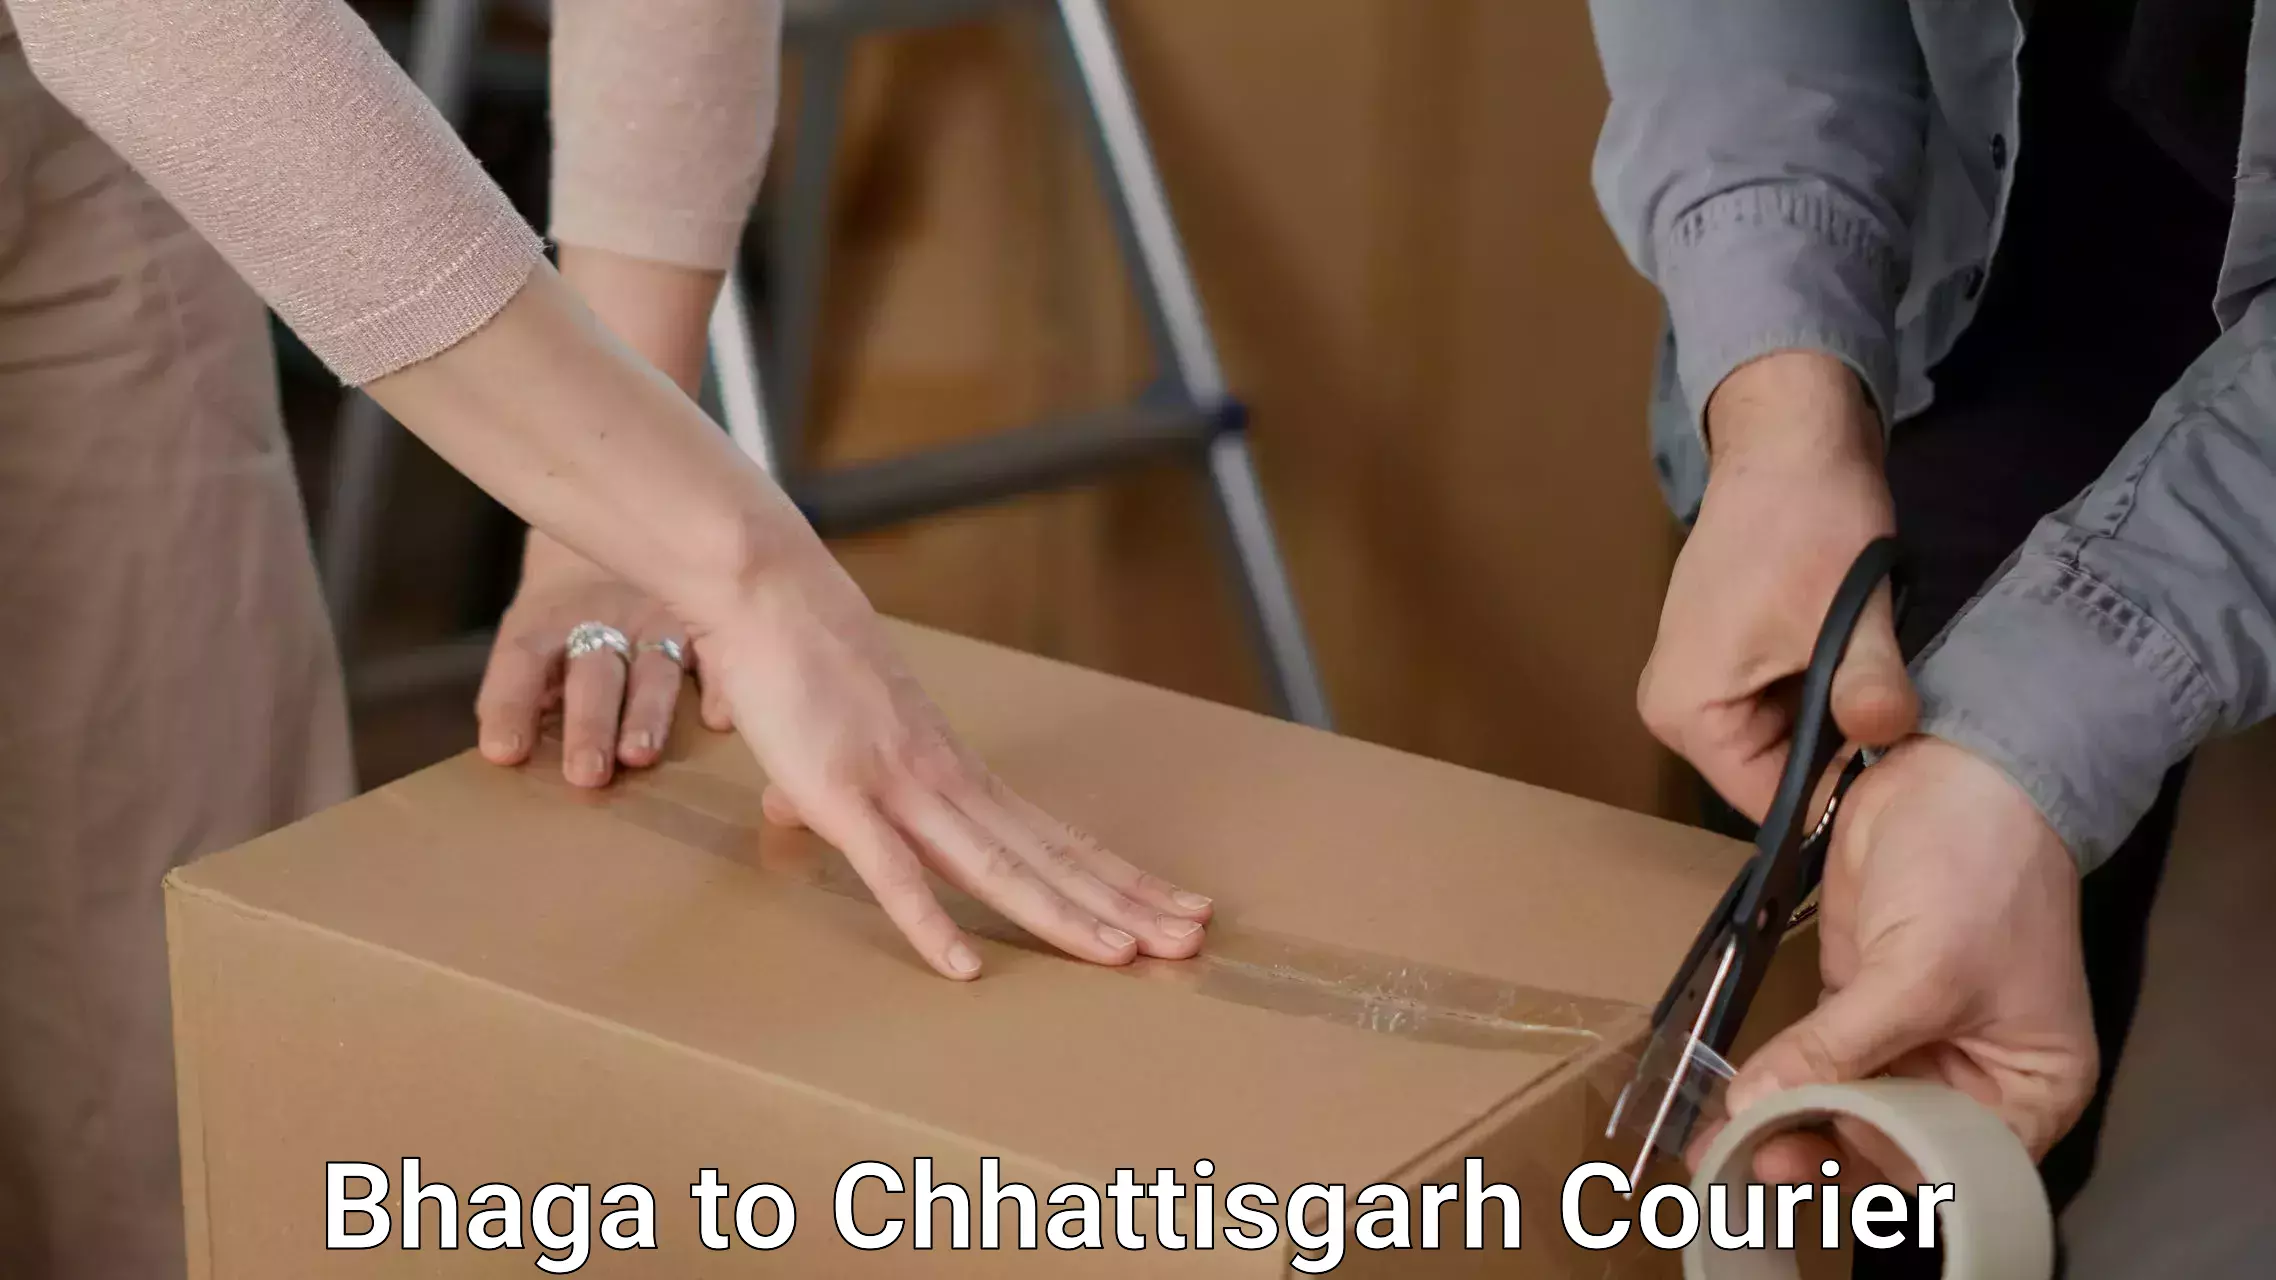 Furniture moving experts Bhaga to Chhattisgarh